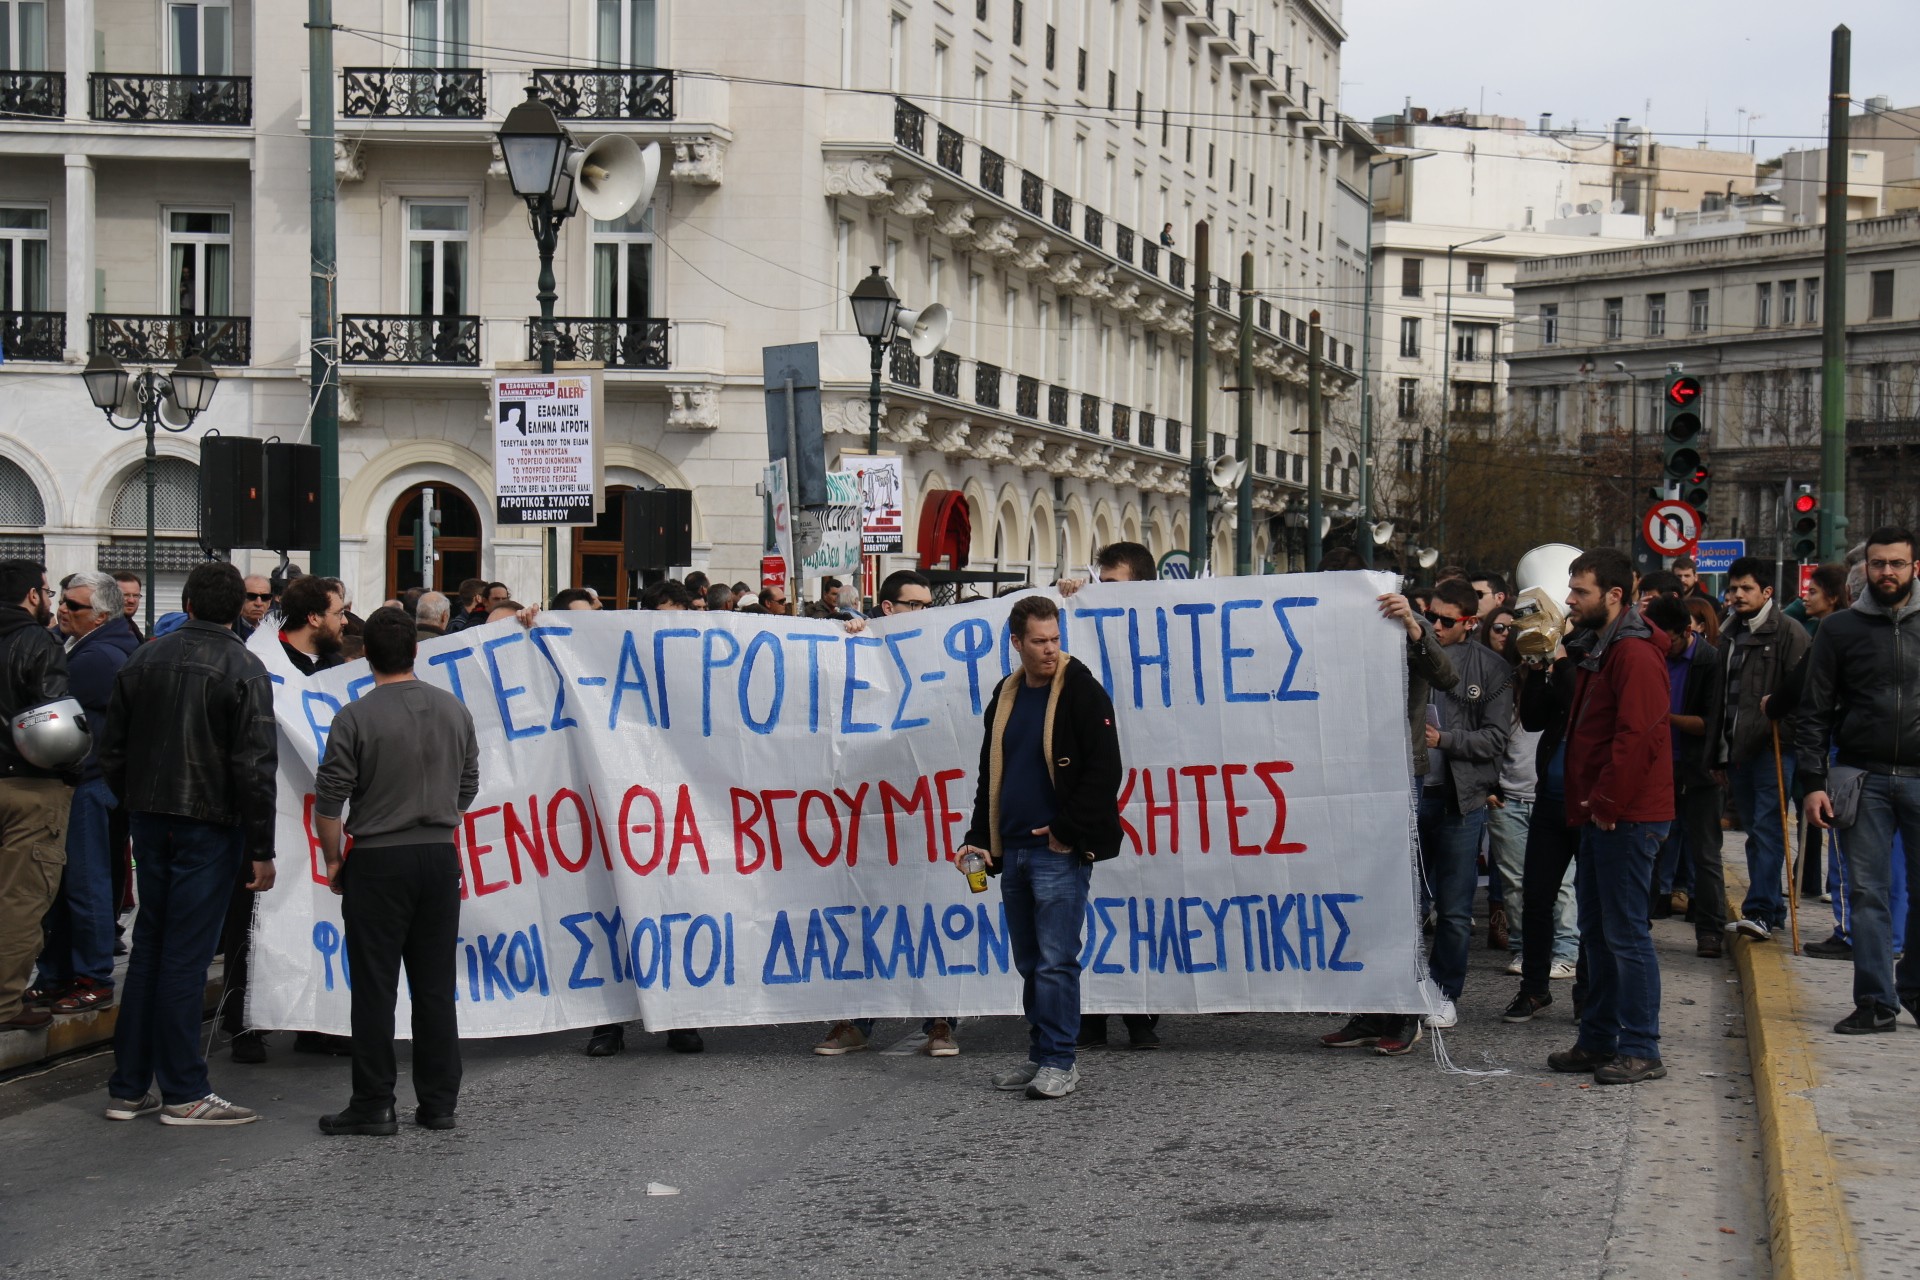 Ποιοι δρόμοι είναι κλειστοί στο κέντρο της Αθήνας